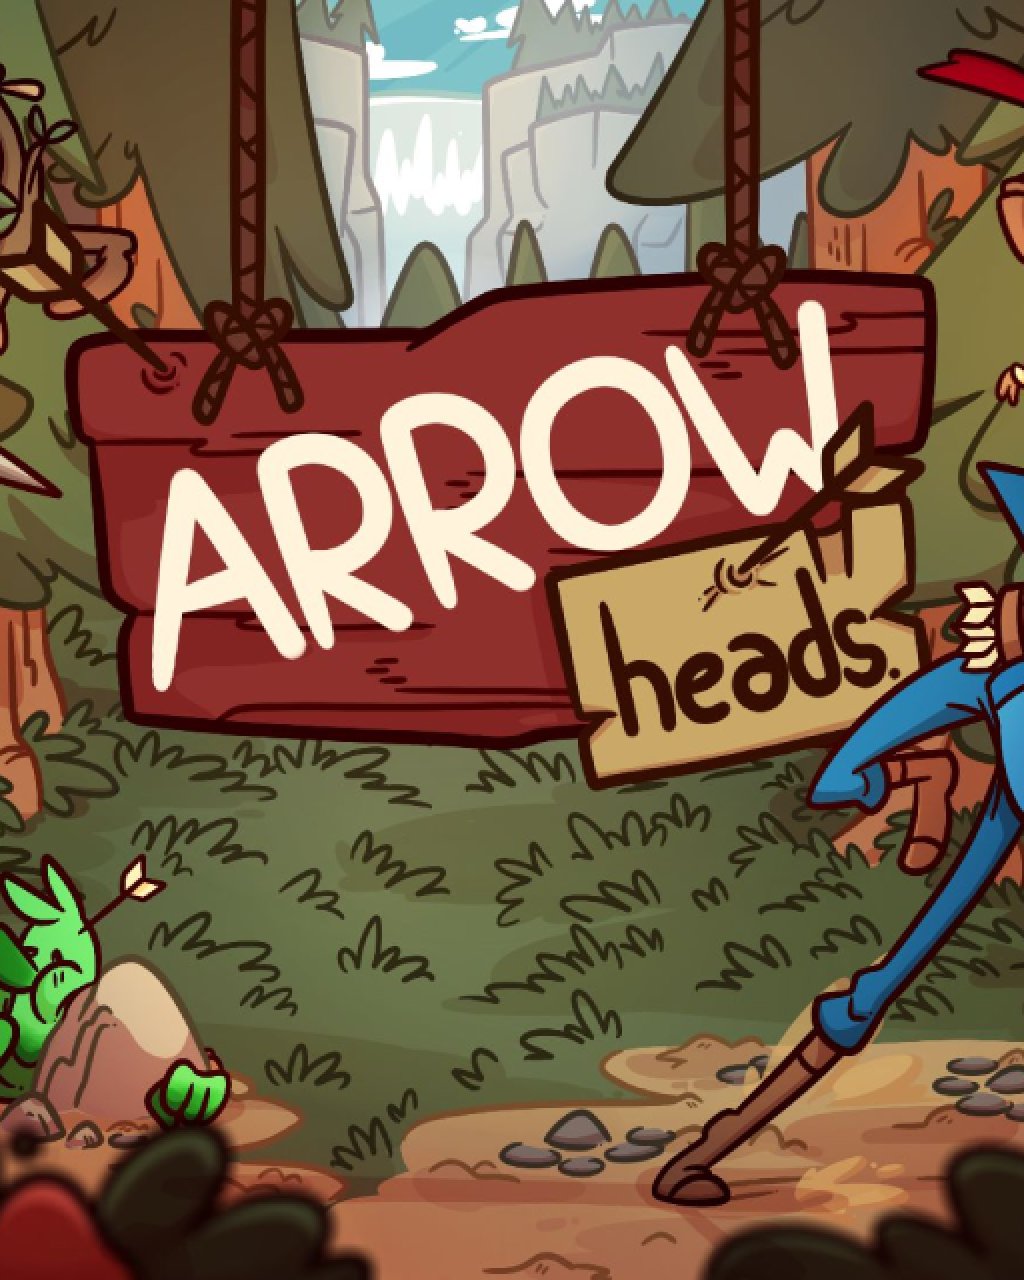 ESD Arrow Heads